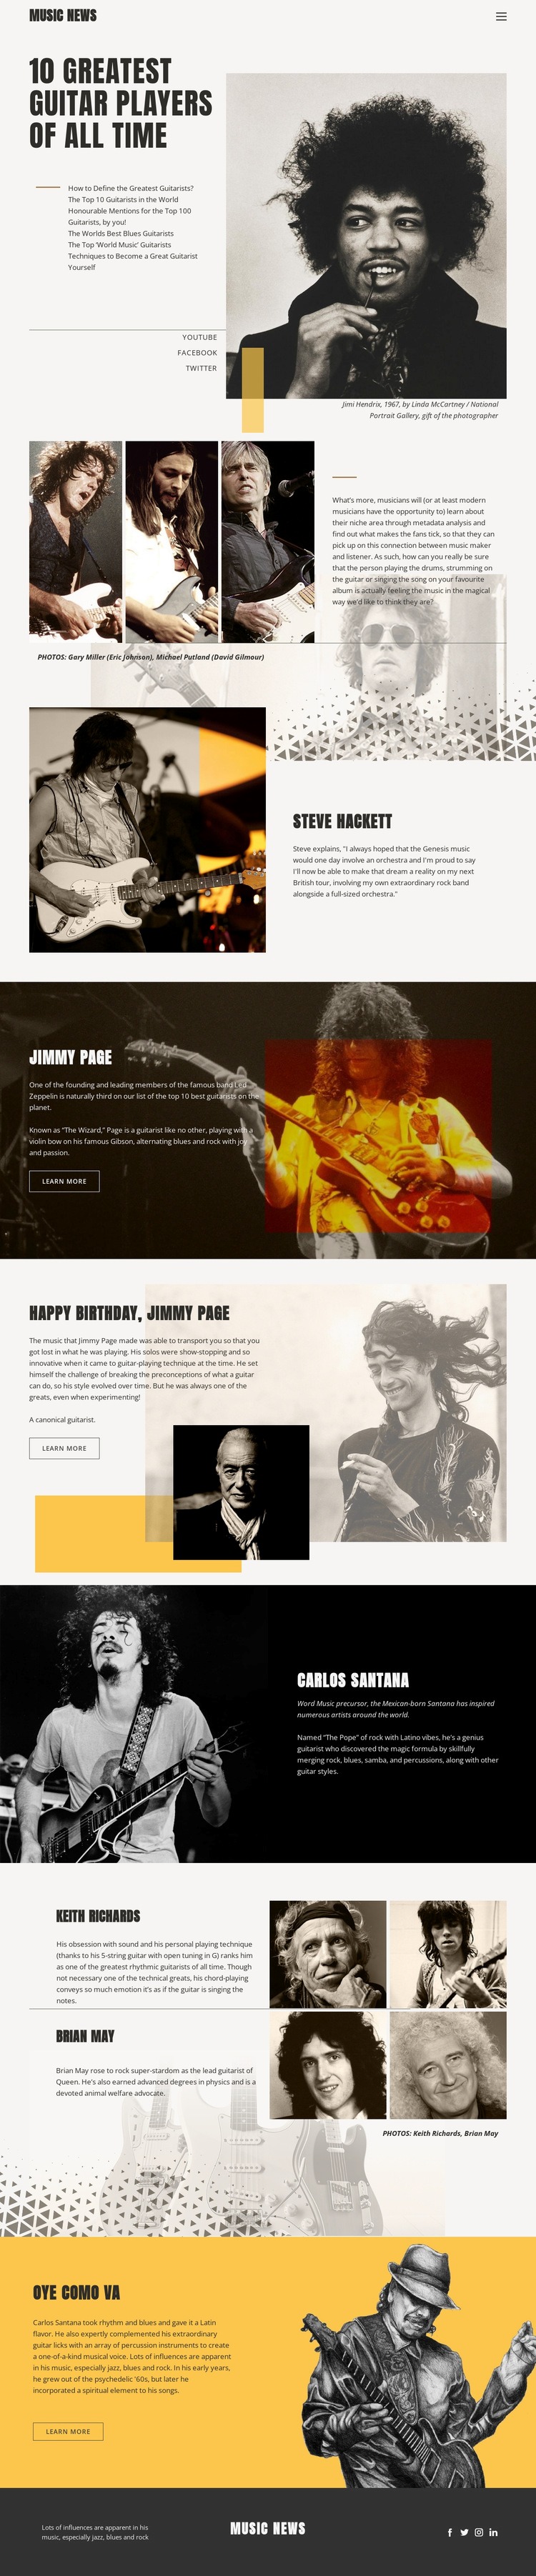 De bästa gitarrspelarna Html webbplatsbyggare